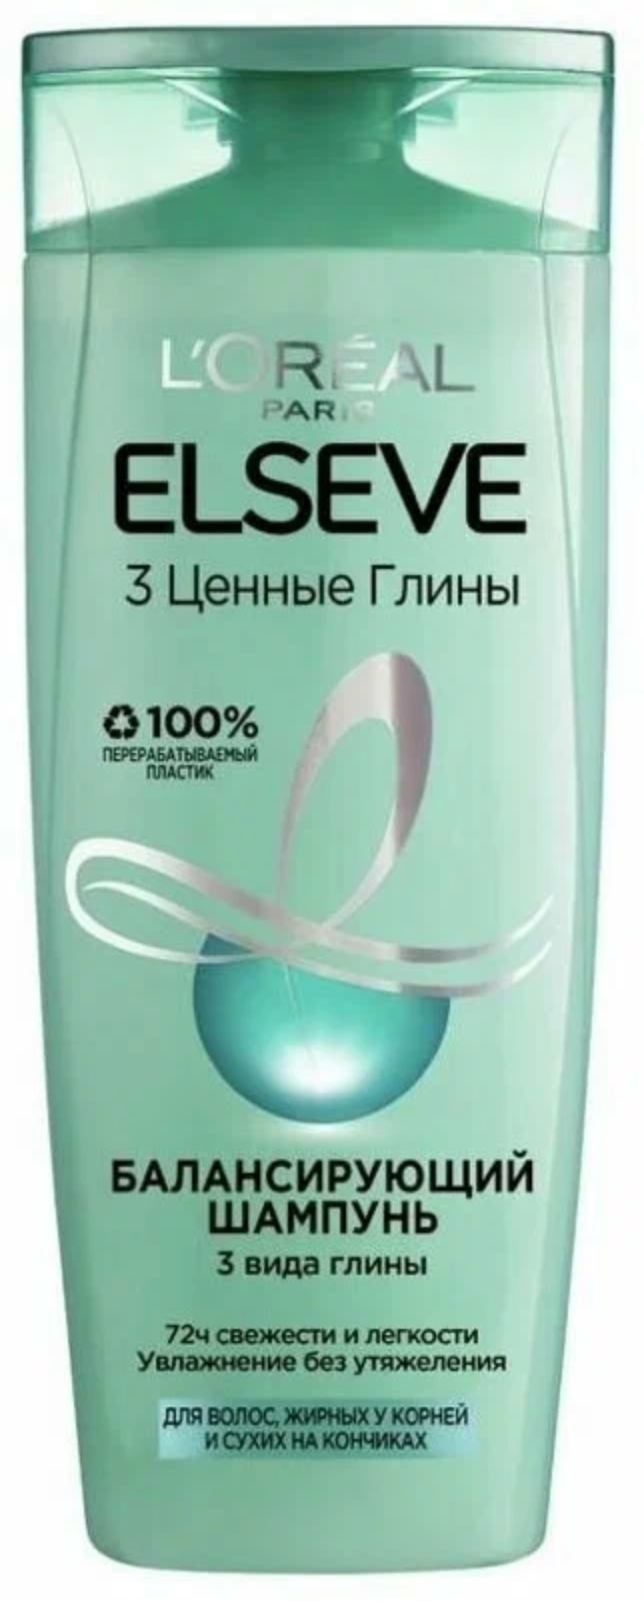 Эльсев / Elseve - Шампунь 3 Ценные глины для жирных у корней и сухих на кончиках волос 400 мл